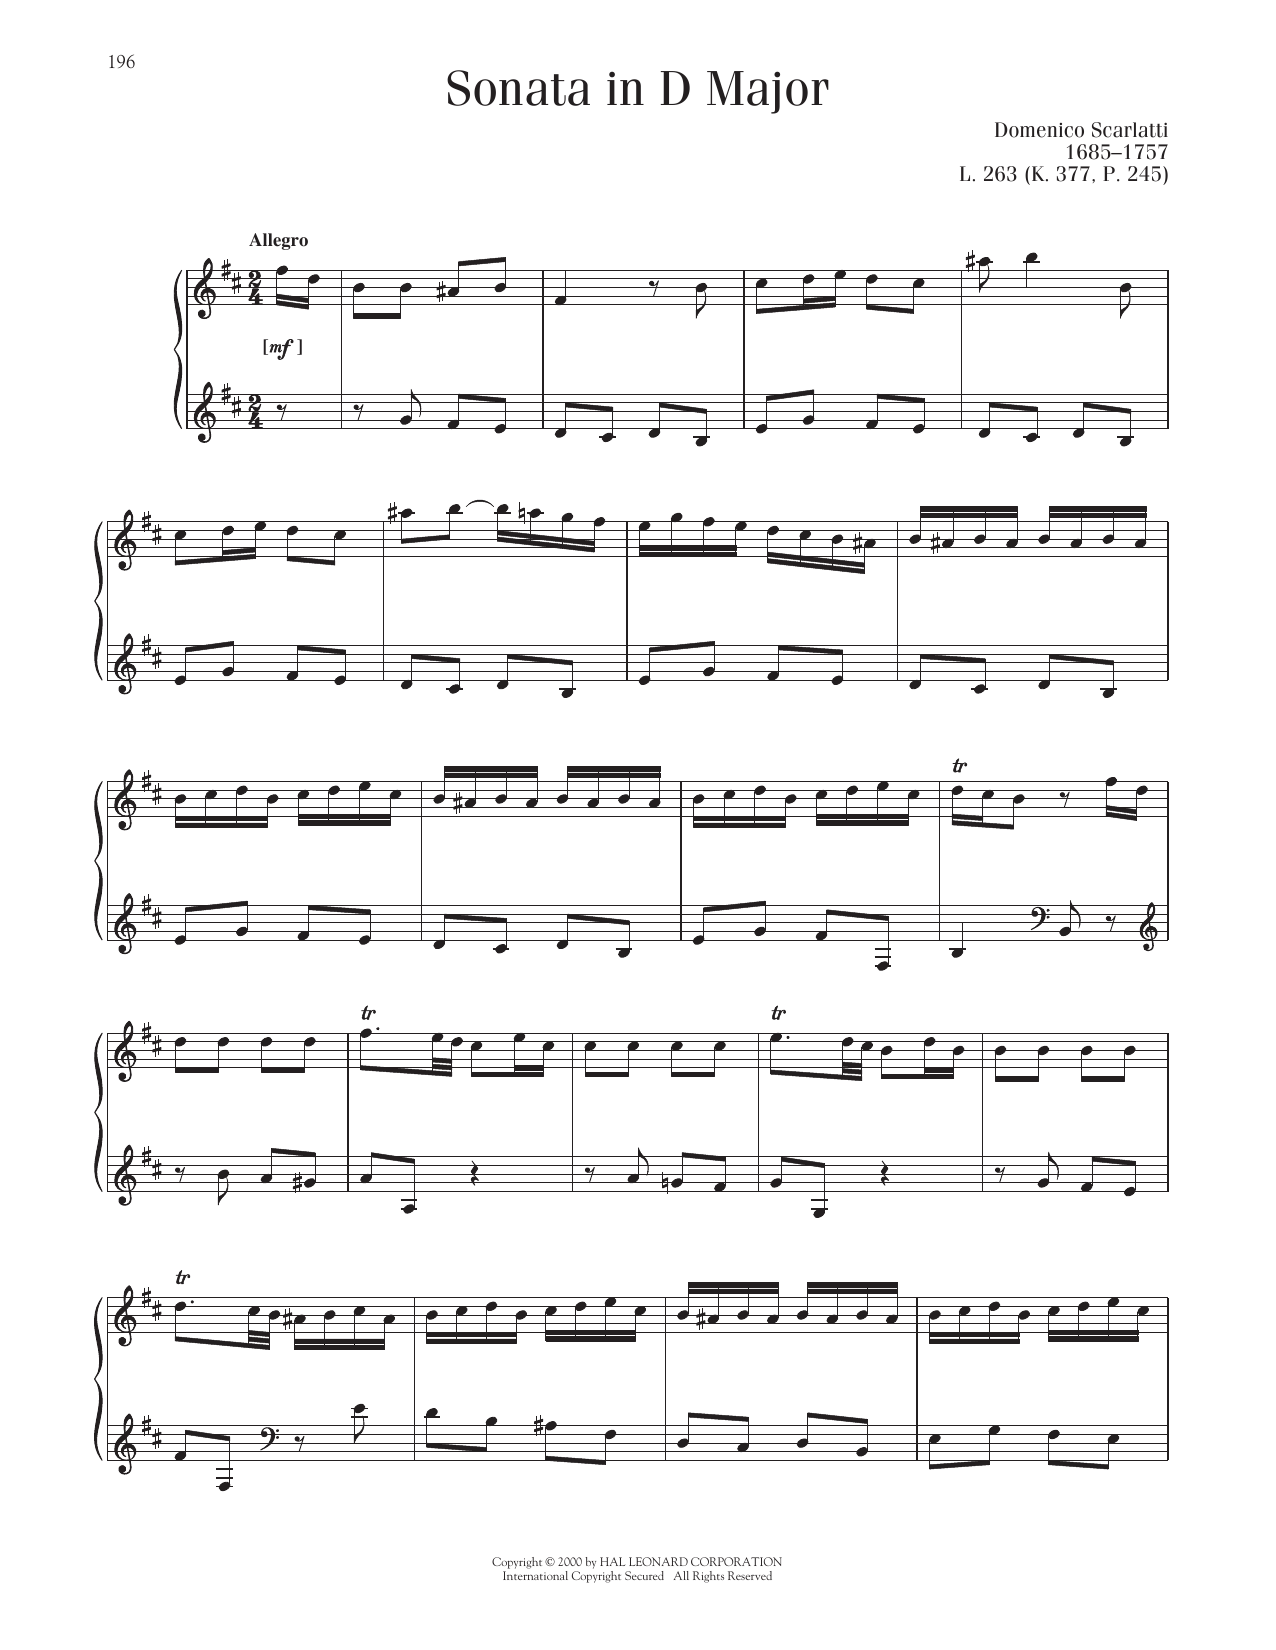 Domenico Scarlatti Sonata In D Major, K. 377 Sheet Music Notes & Chords for Piano Solo - Download or Print PDF